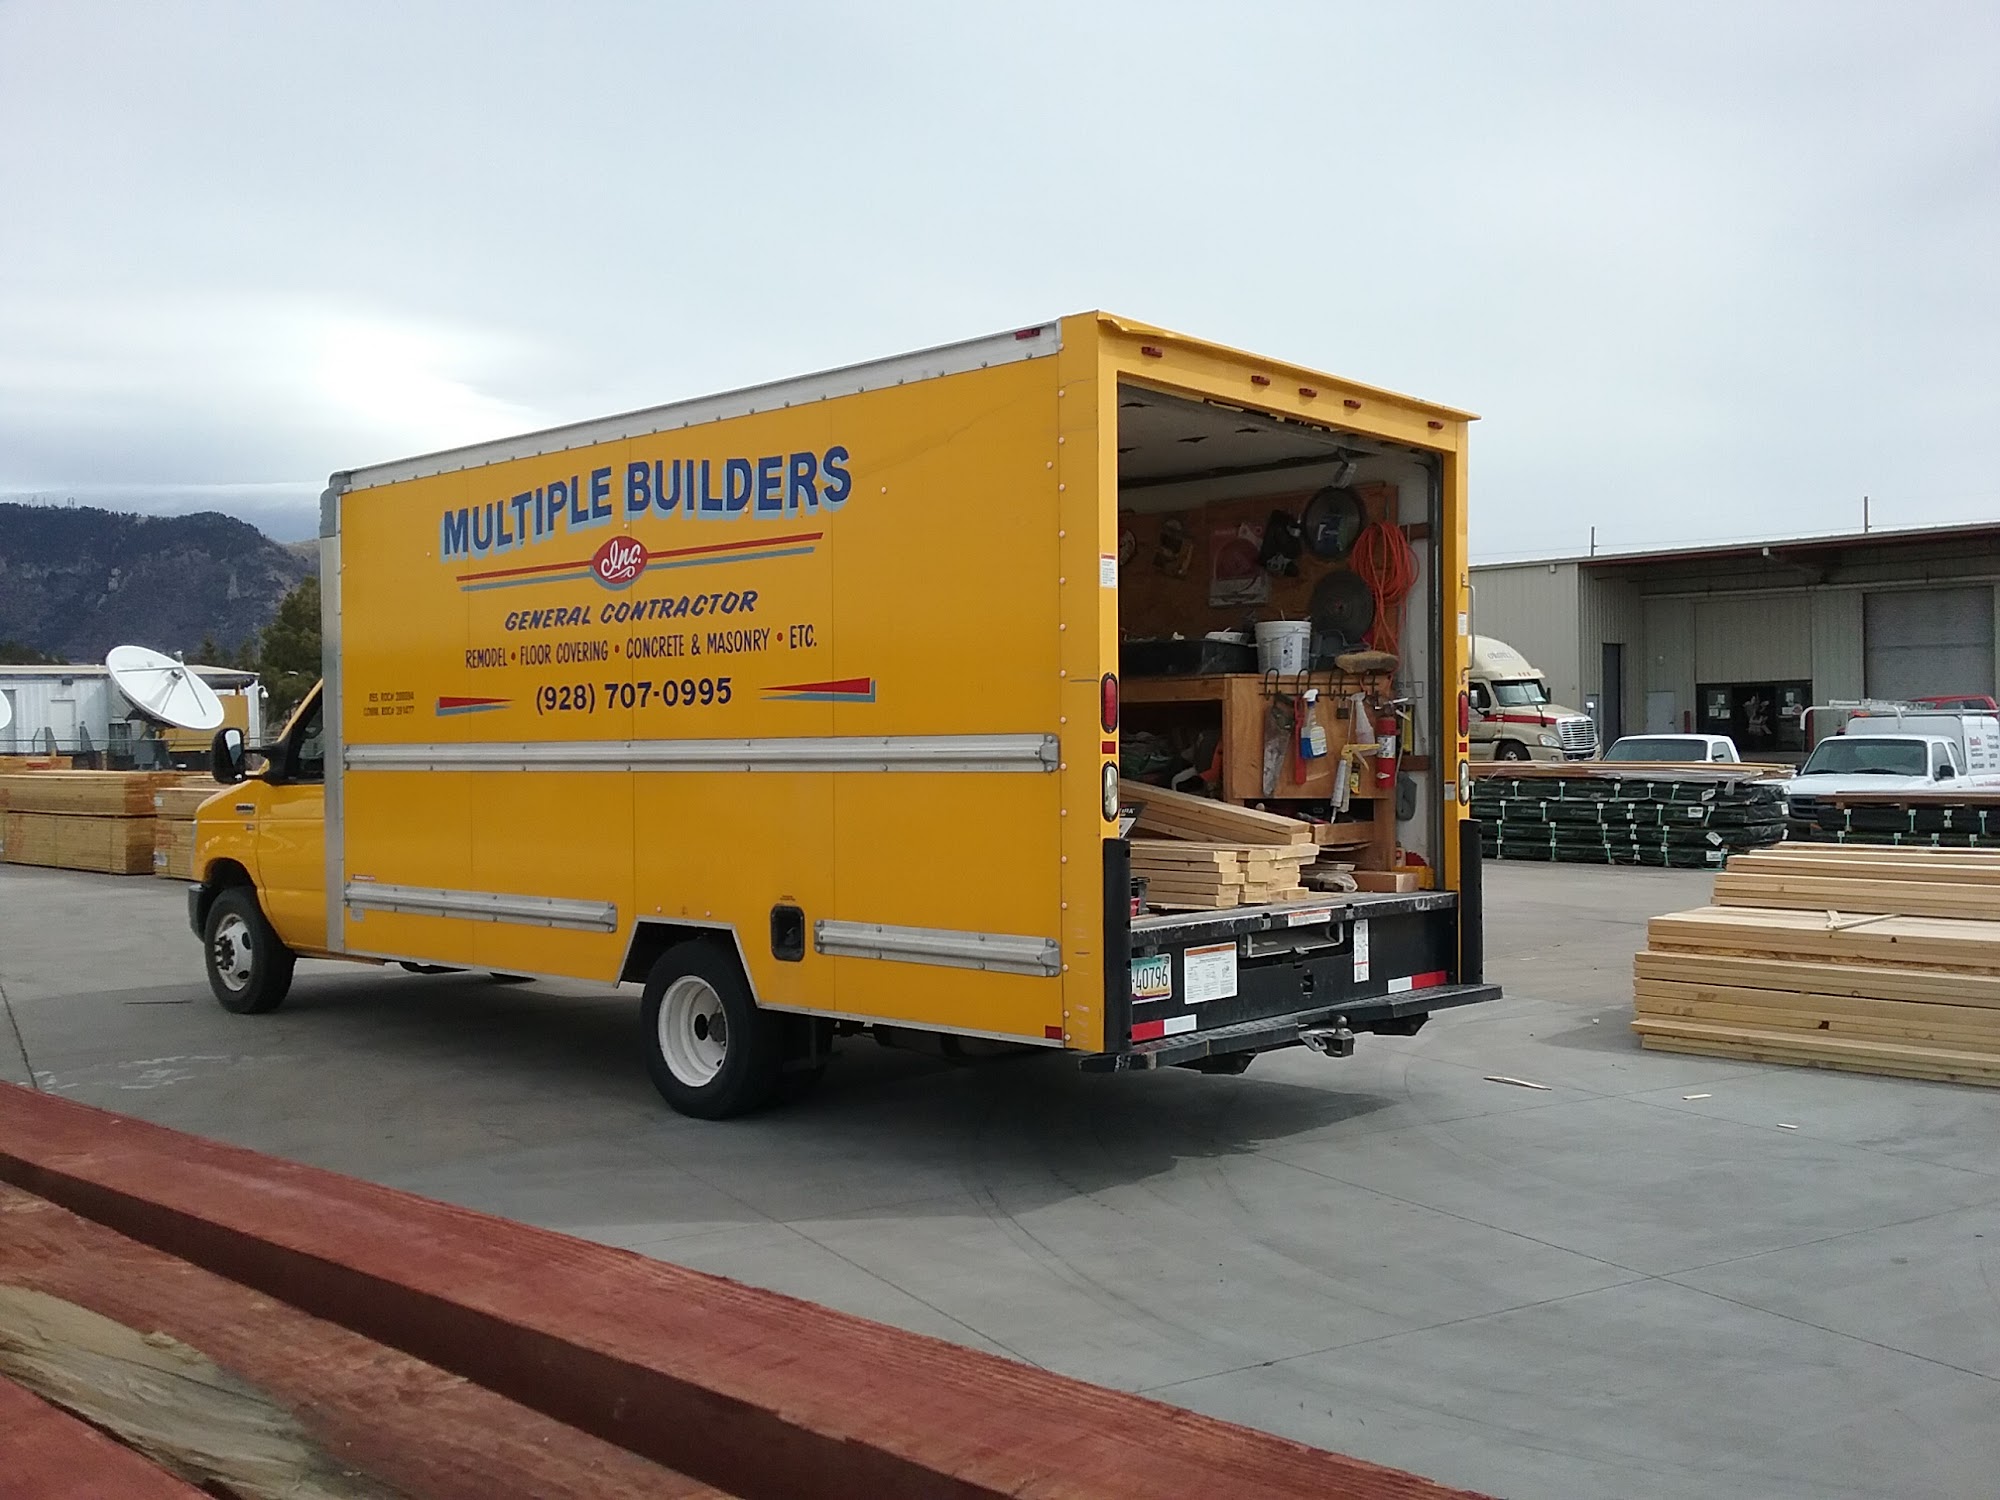 Multiple Builders Inc. Flagstaff Remodeling